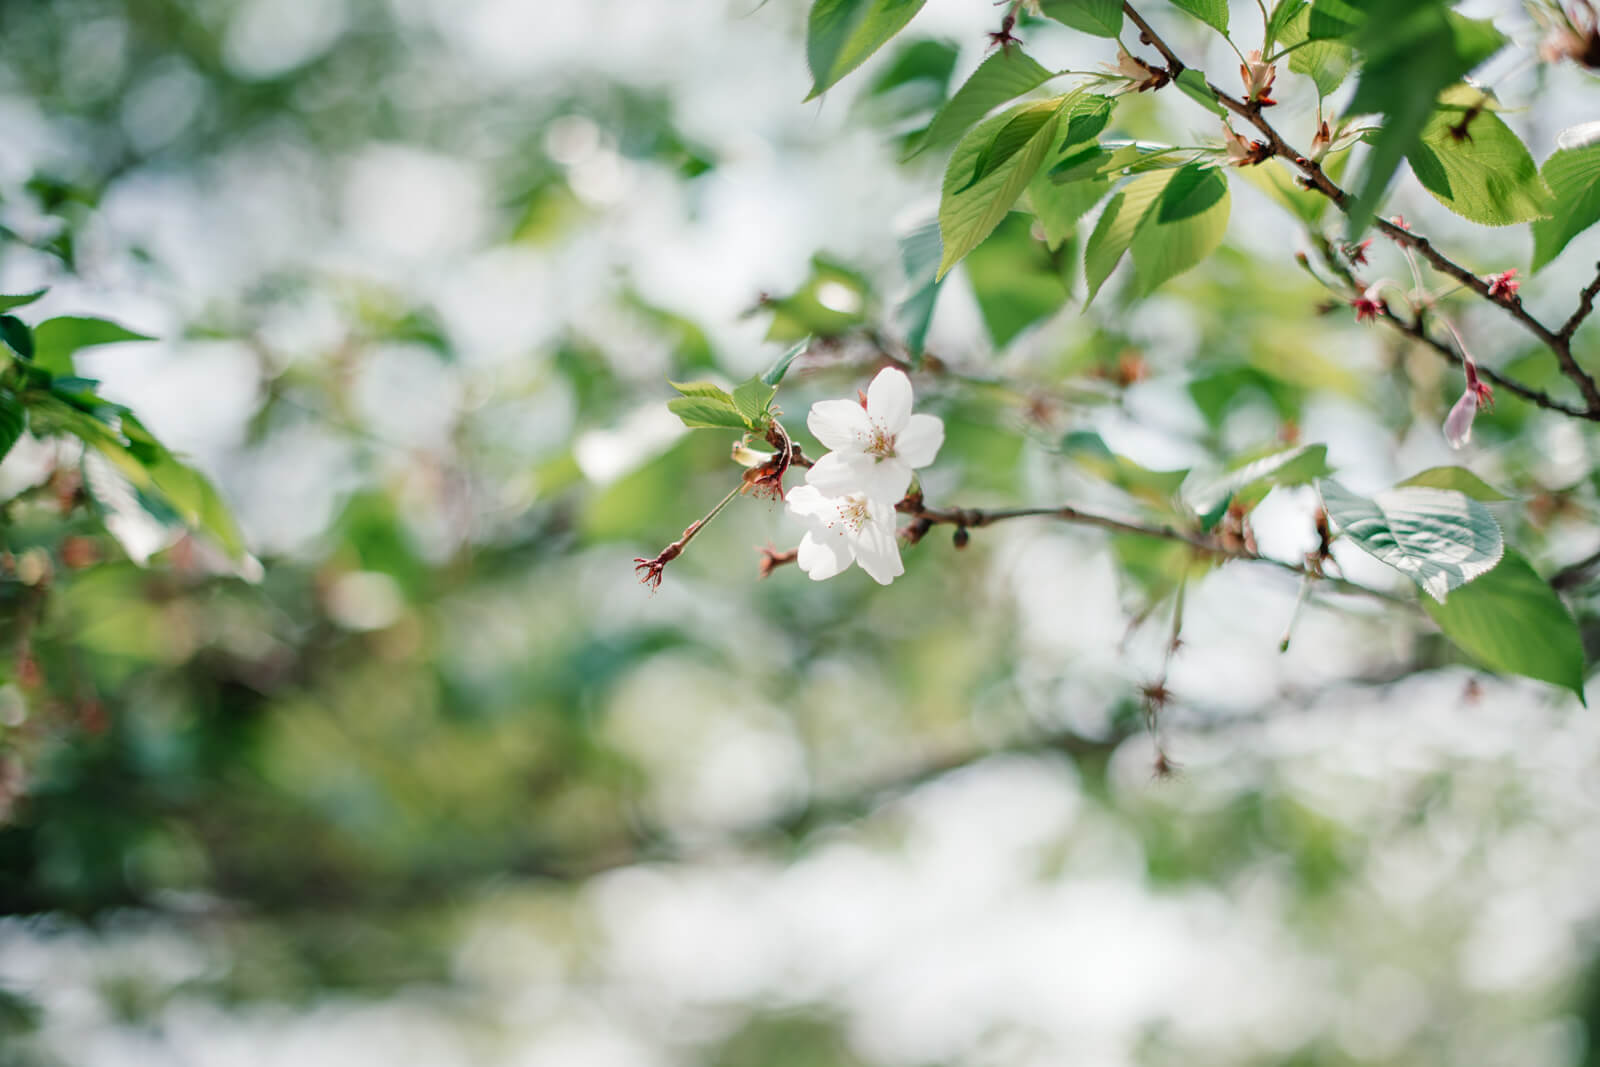 高麗神社 参道でみつけた桜の花